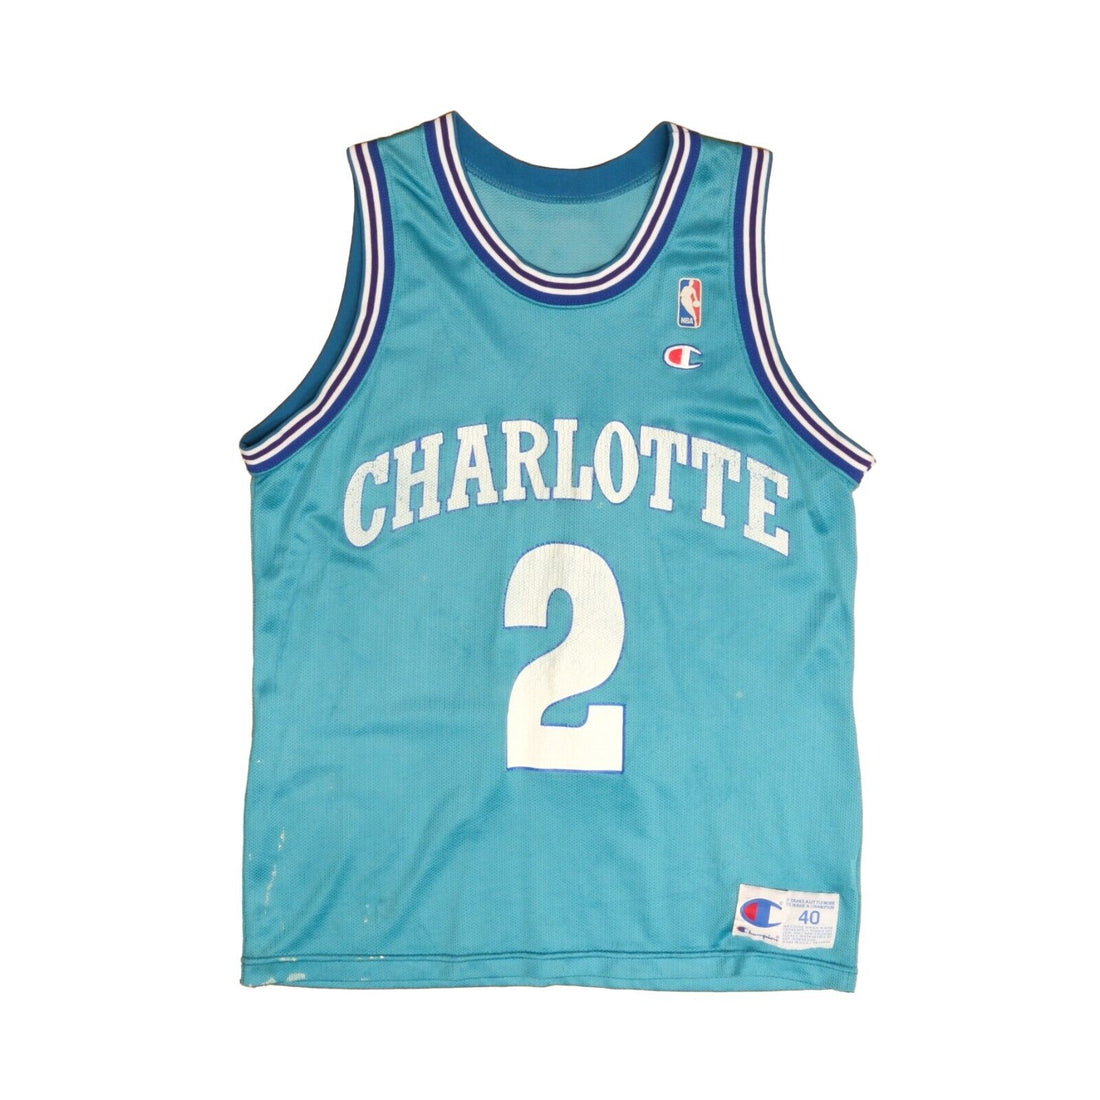 Vintage Charlotte Hornets Larry Johnson Champion Jersey Size 40 NBA